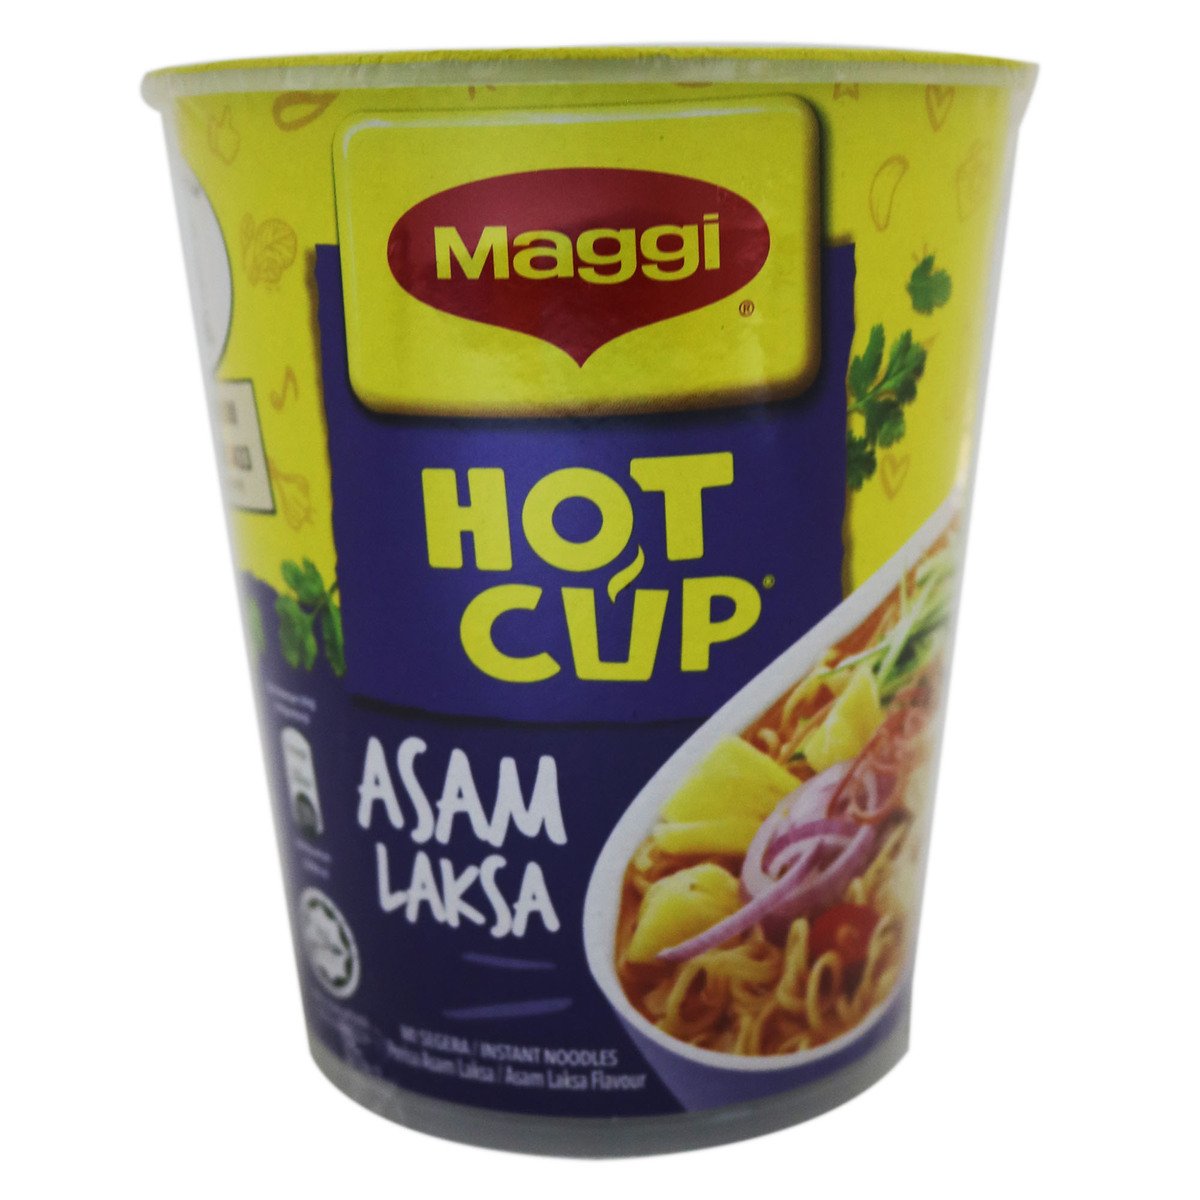 Maggi Hot Cup Asam Laksa 60g